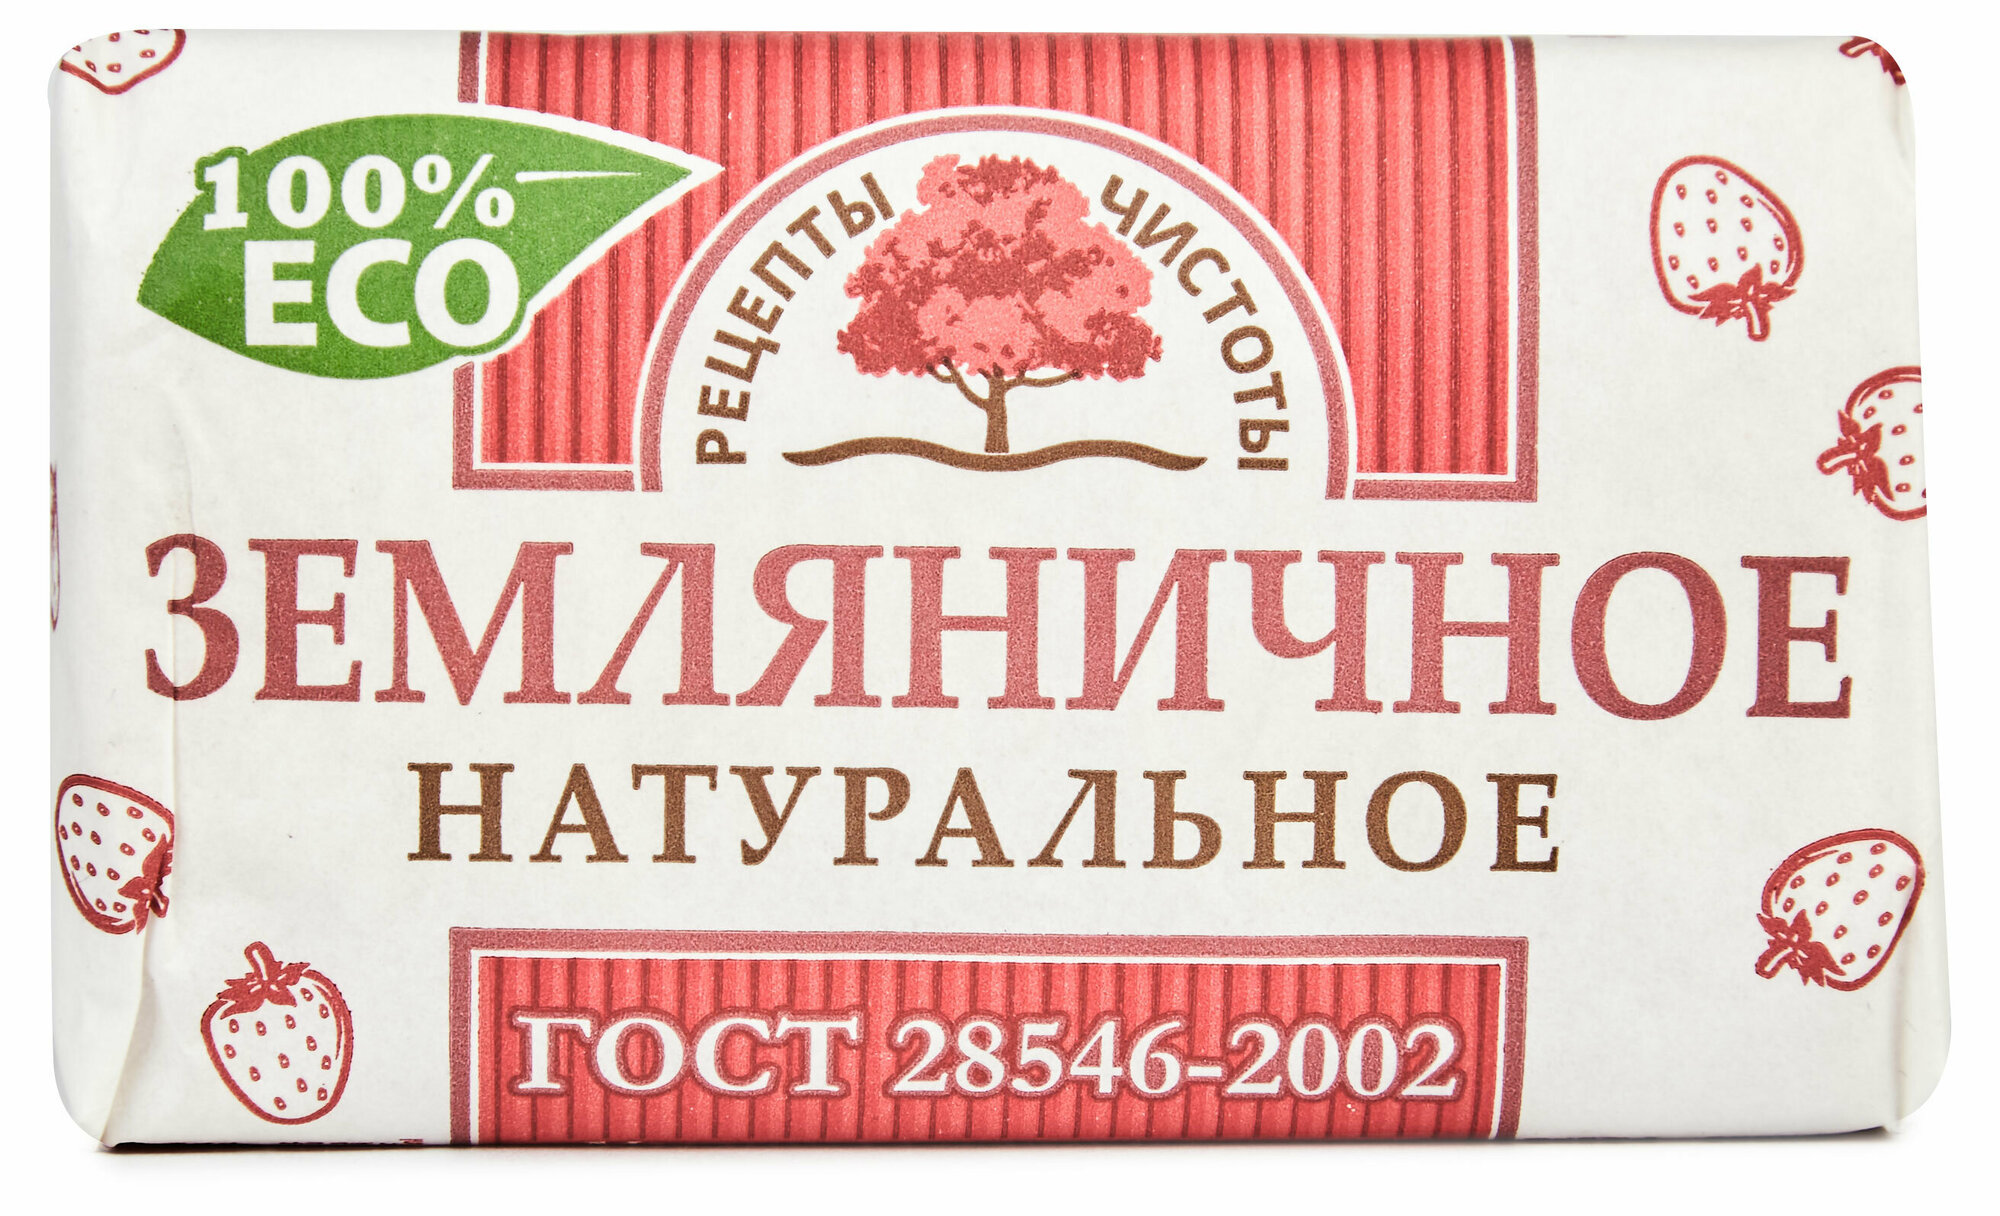 Мыло туалетное «Рецепты чистоты» Земляничное, 180 г